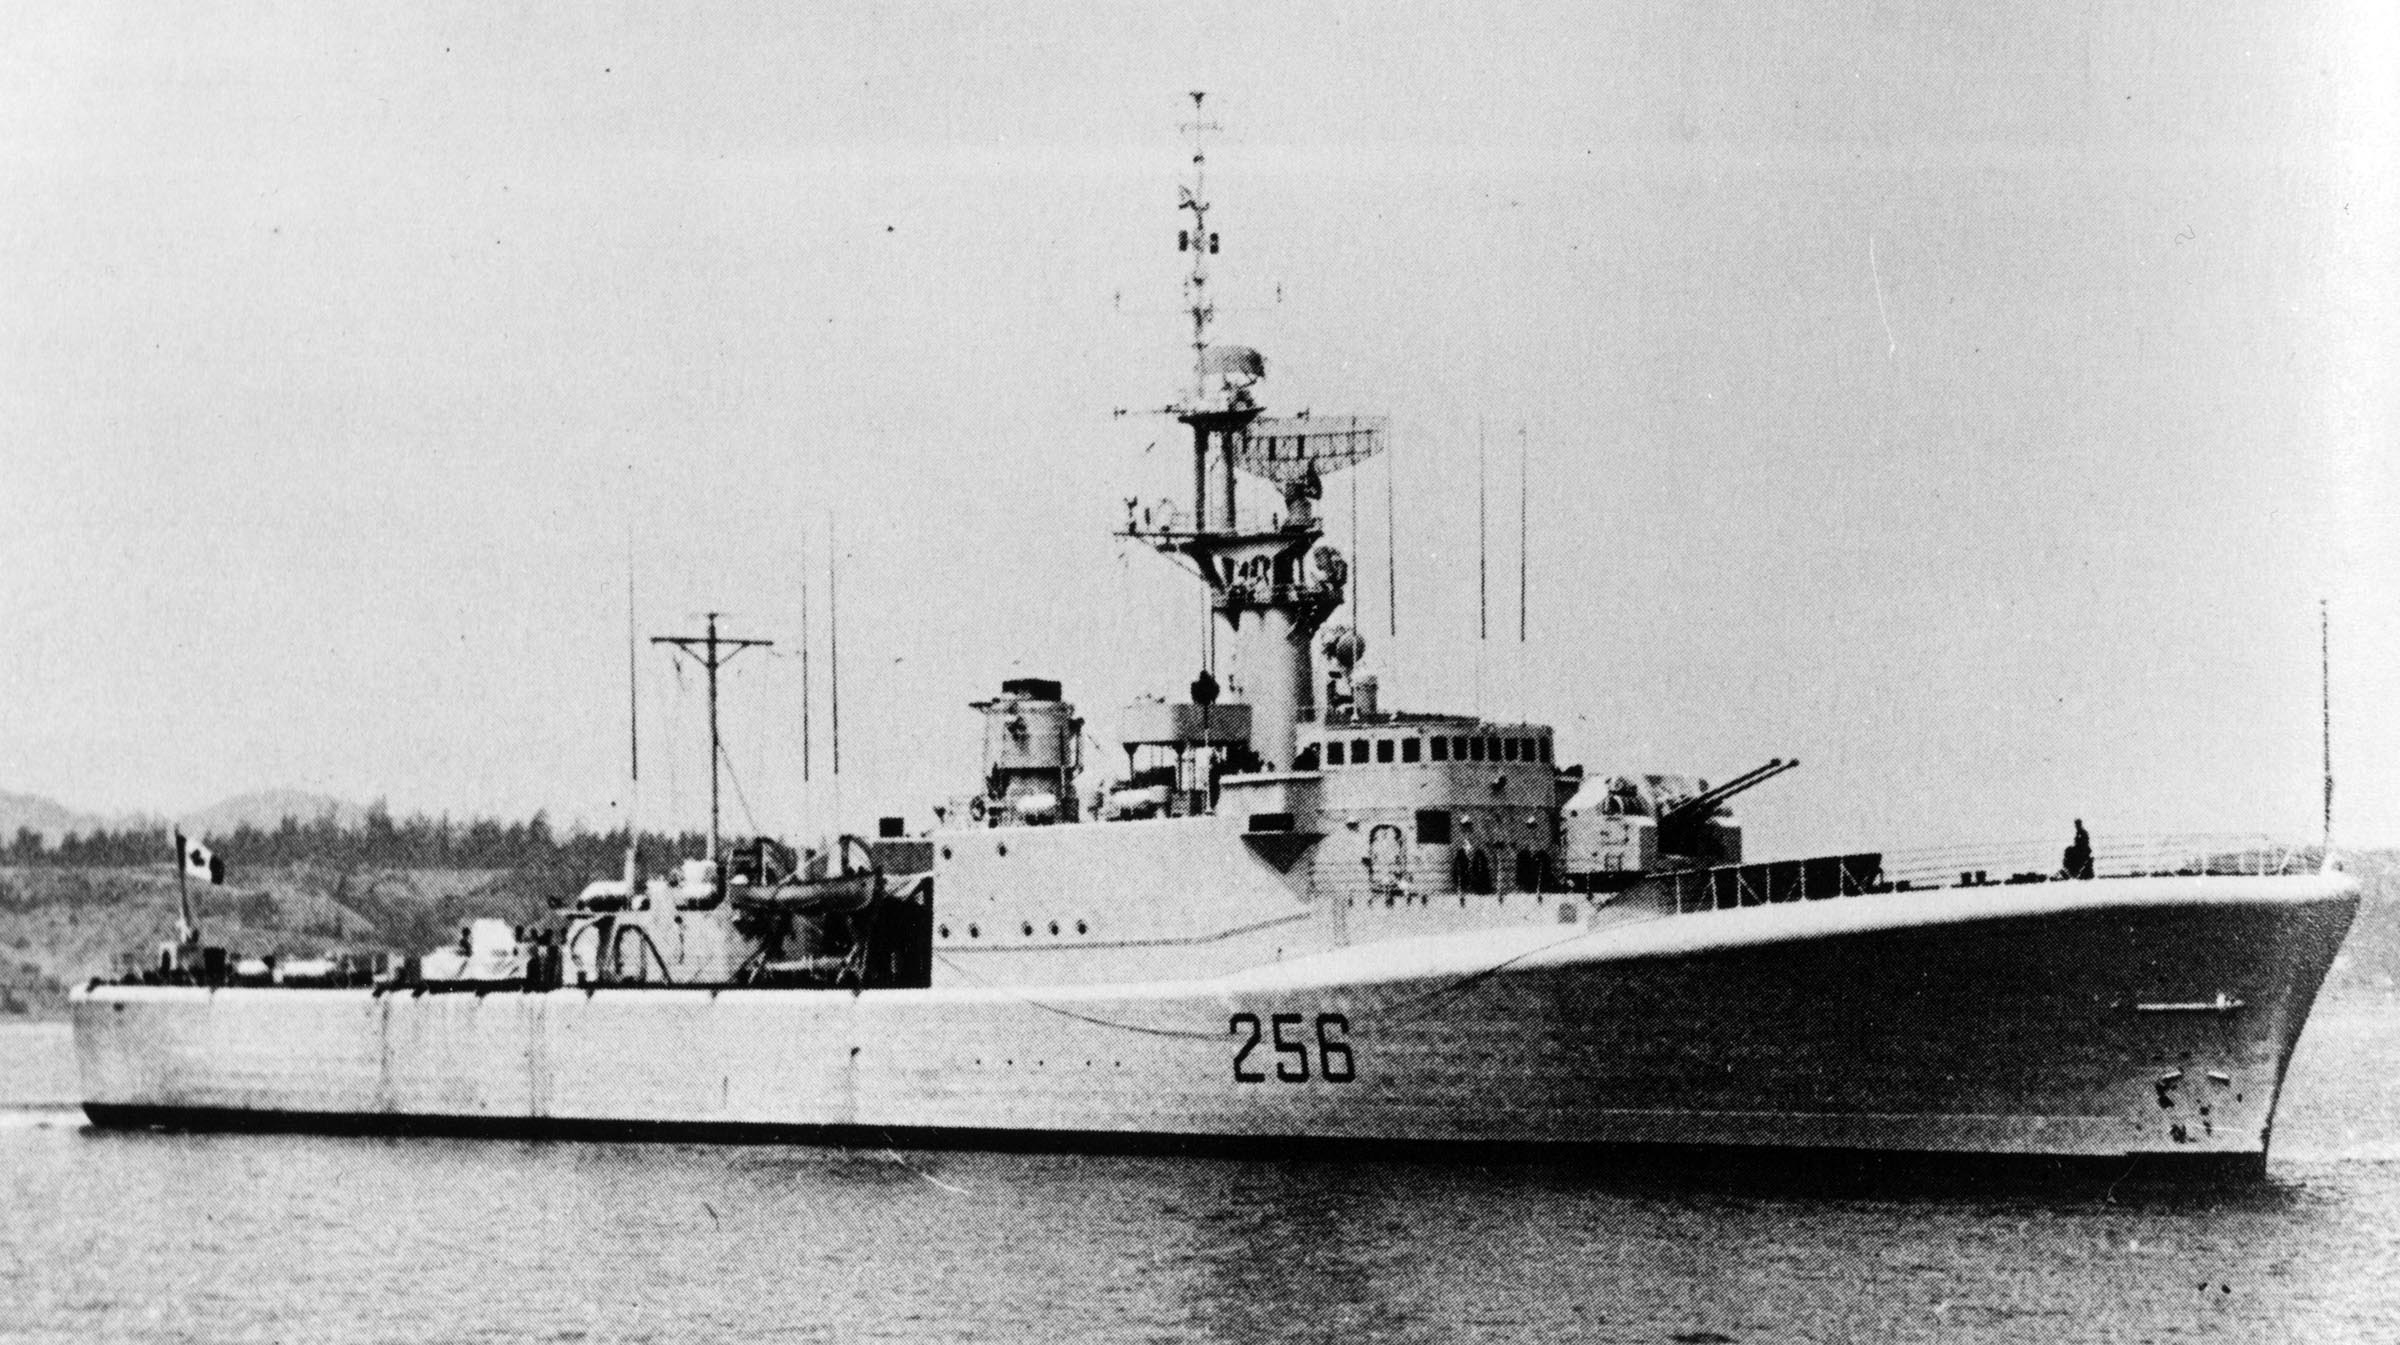 HMCS ST. CROIX (2nd)